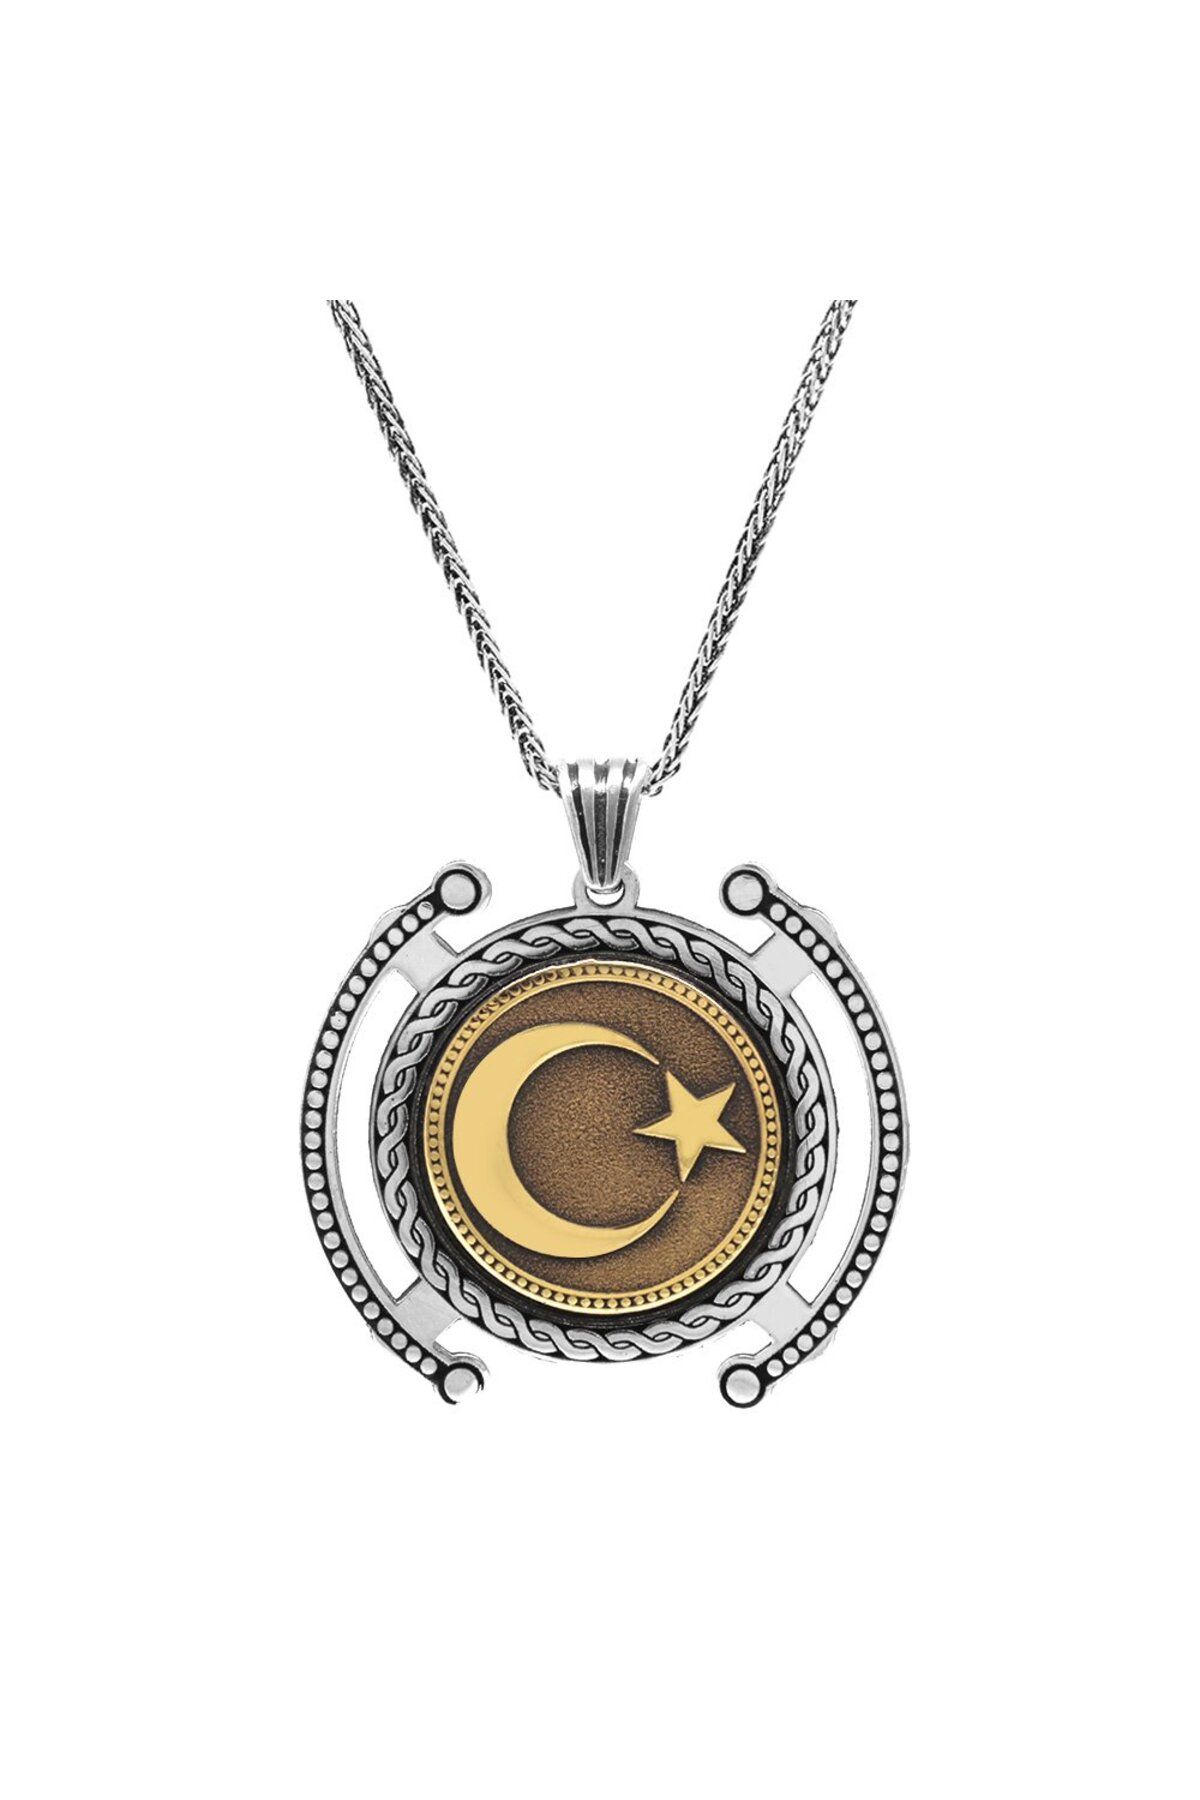 Asel Aktaş Ayyıldız Temalı Kalın Zincirli 925 Ayar Gümüş Madalyon